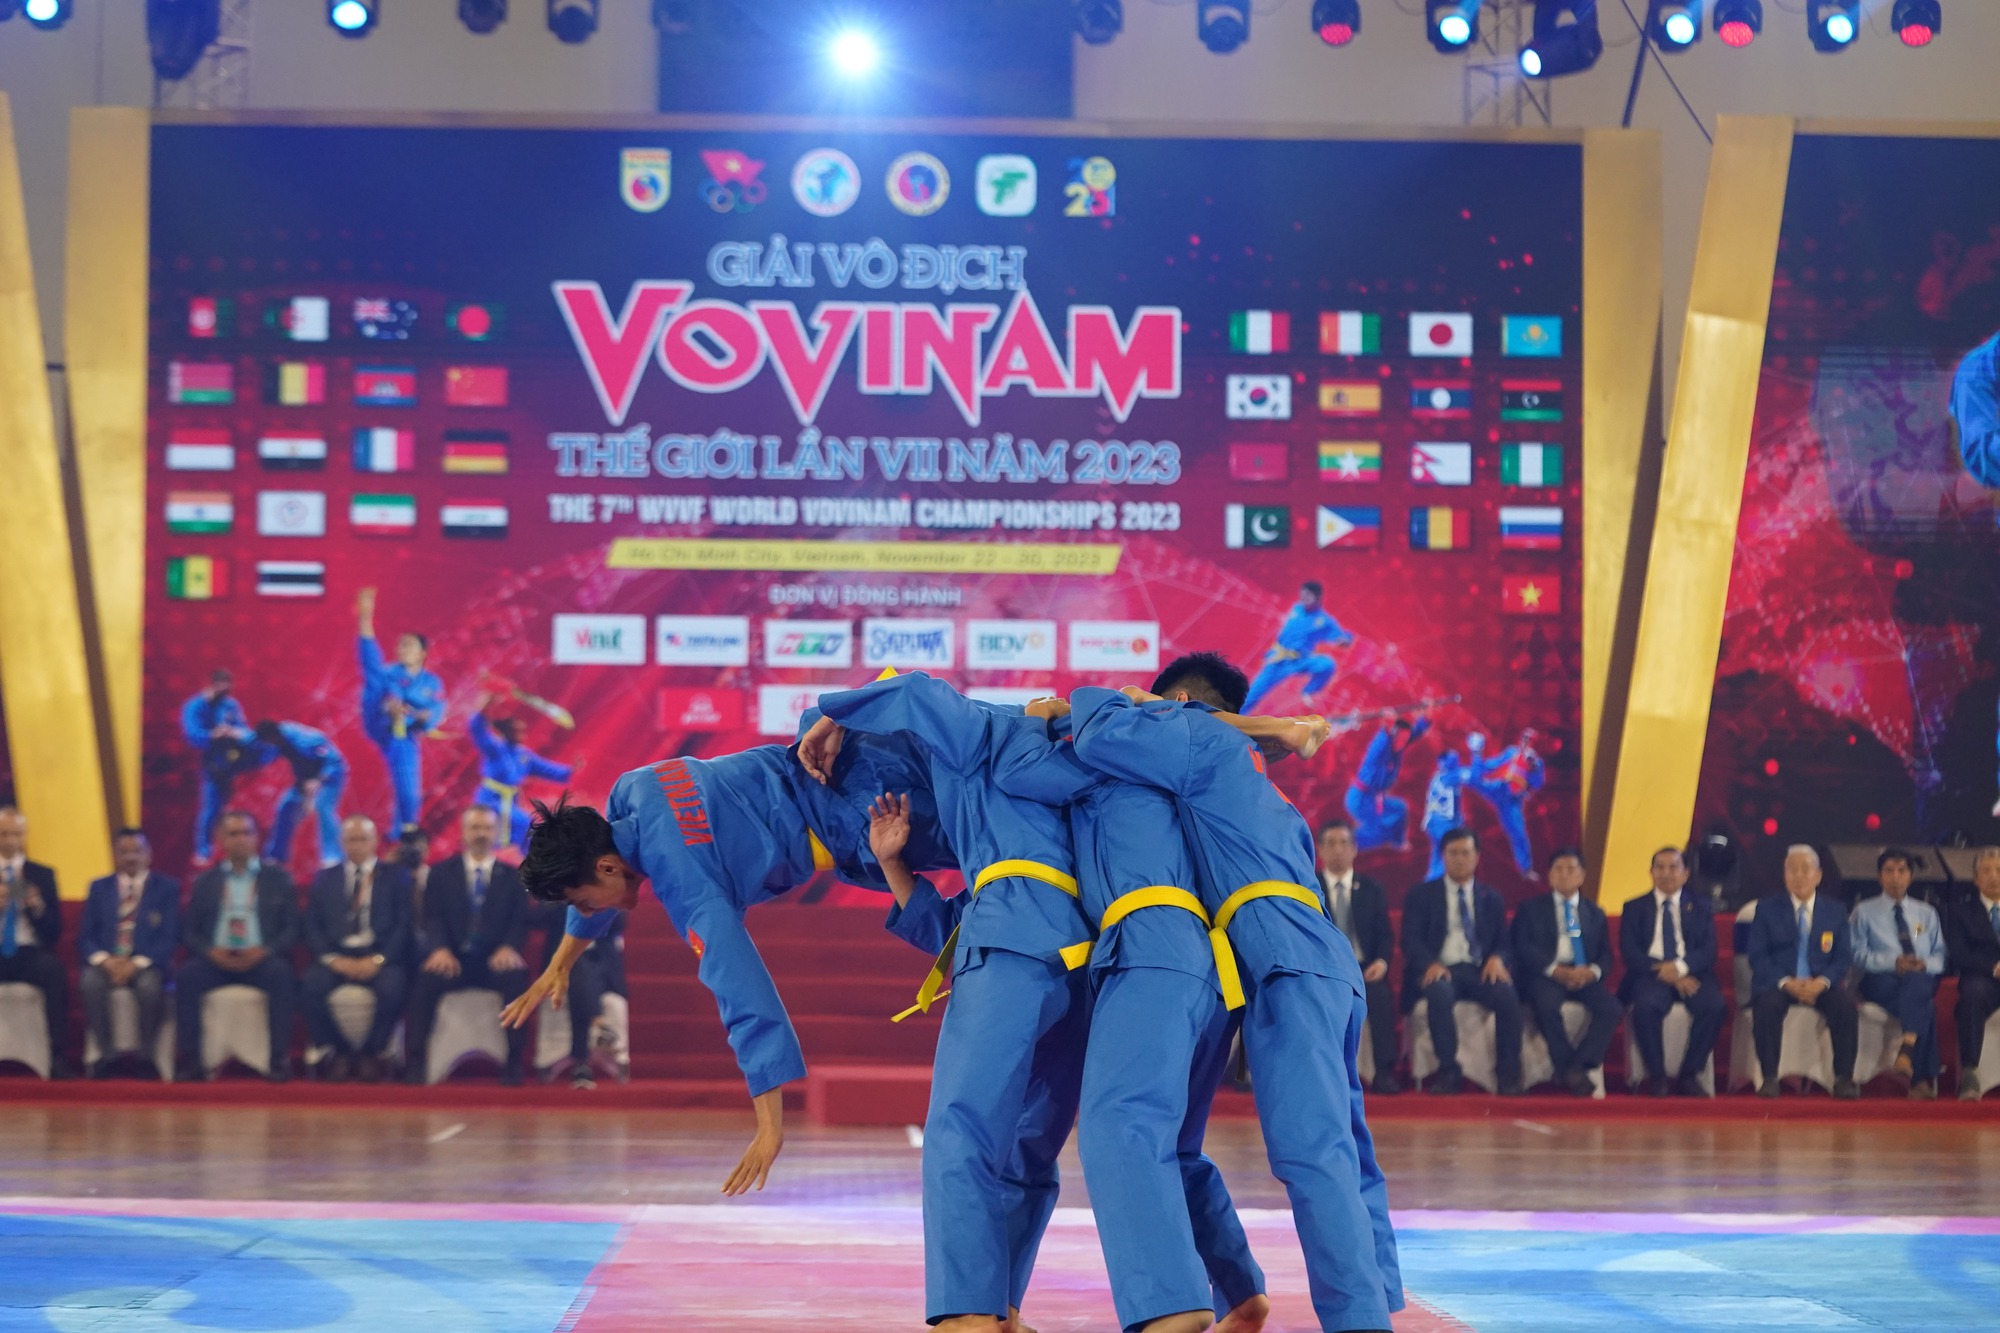 CLIP: Những màn biểu diễn ấn tượng trong lễ khai mạc Giải Vovinam thế giới lần 7-2023 - Ảnh 8.